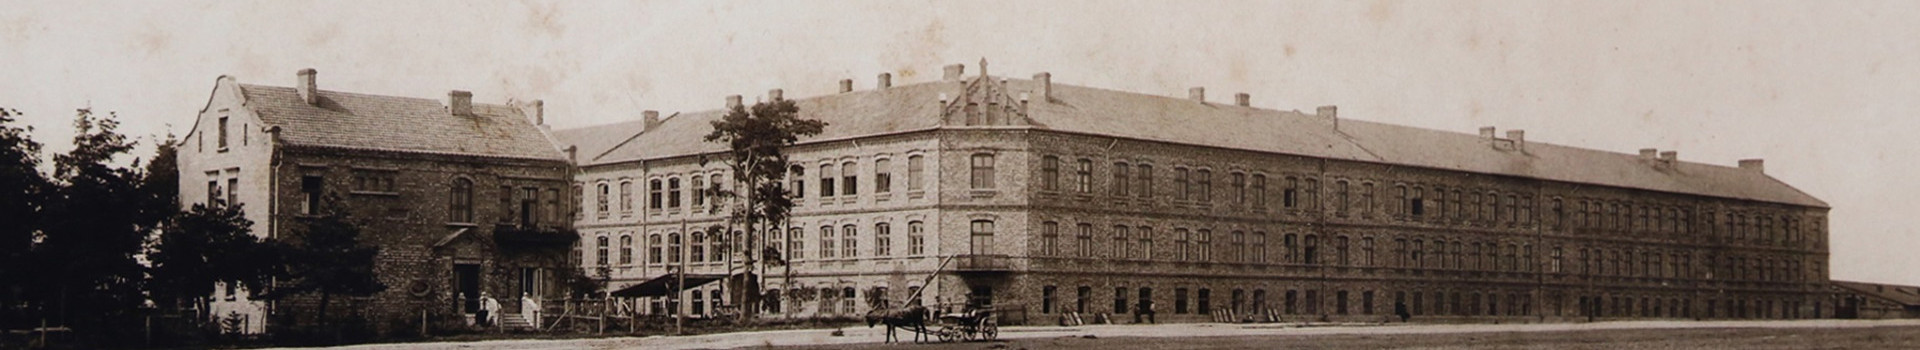 Historia Szkoły - zdjęcie koszar z 1909 roku